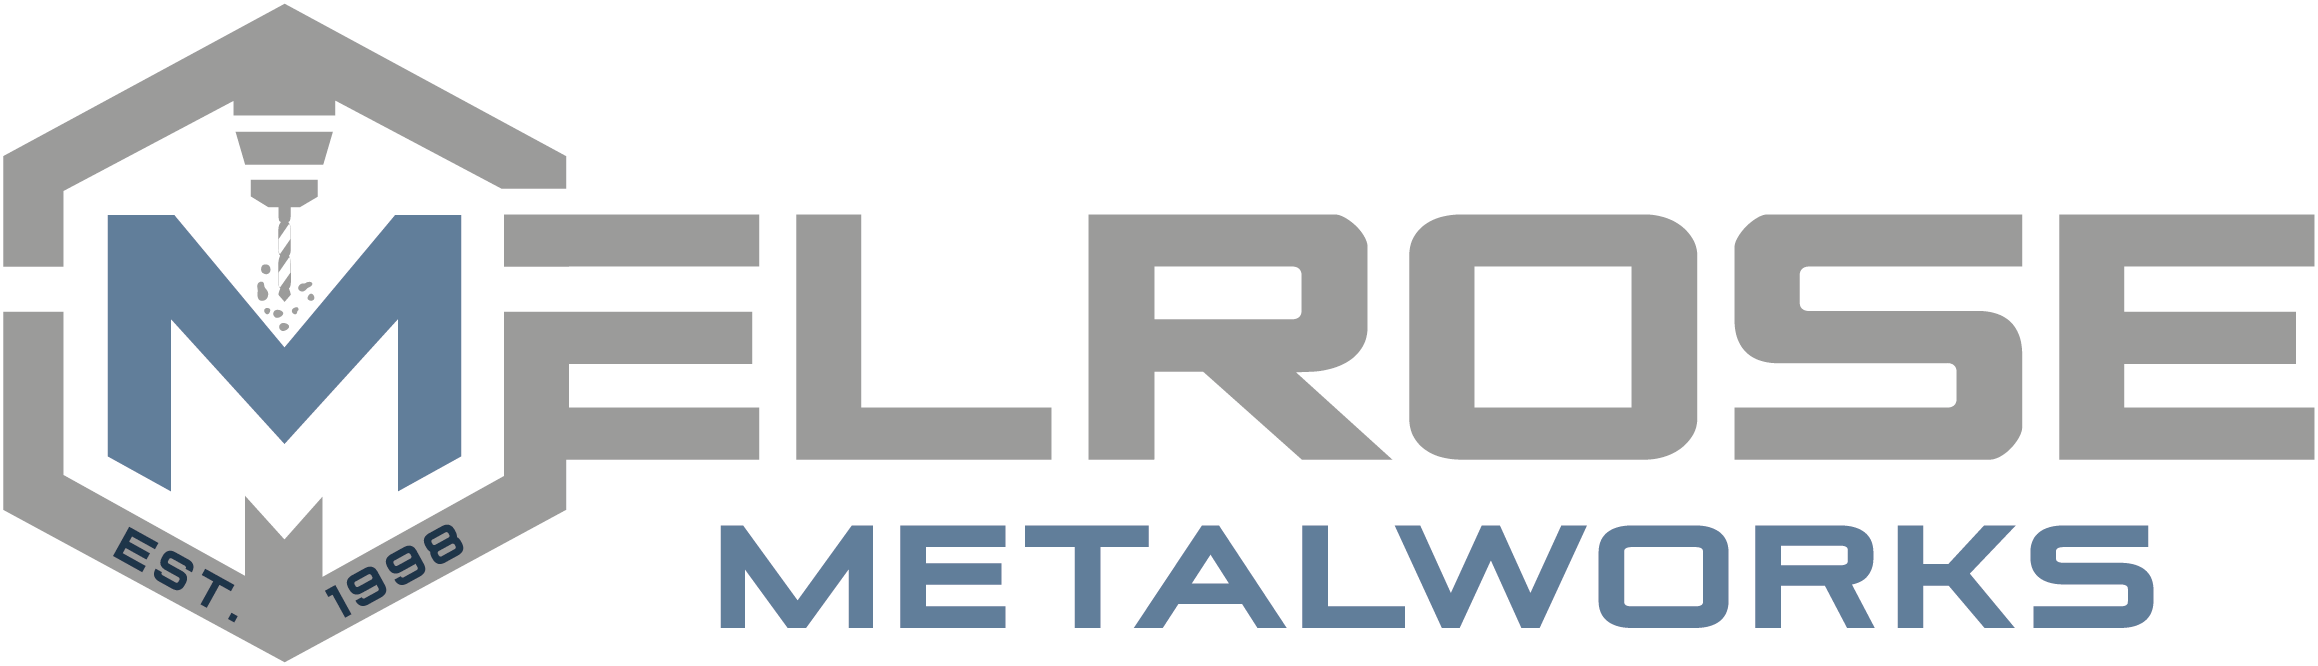 Melrose Metalworks